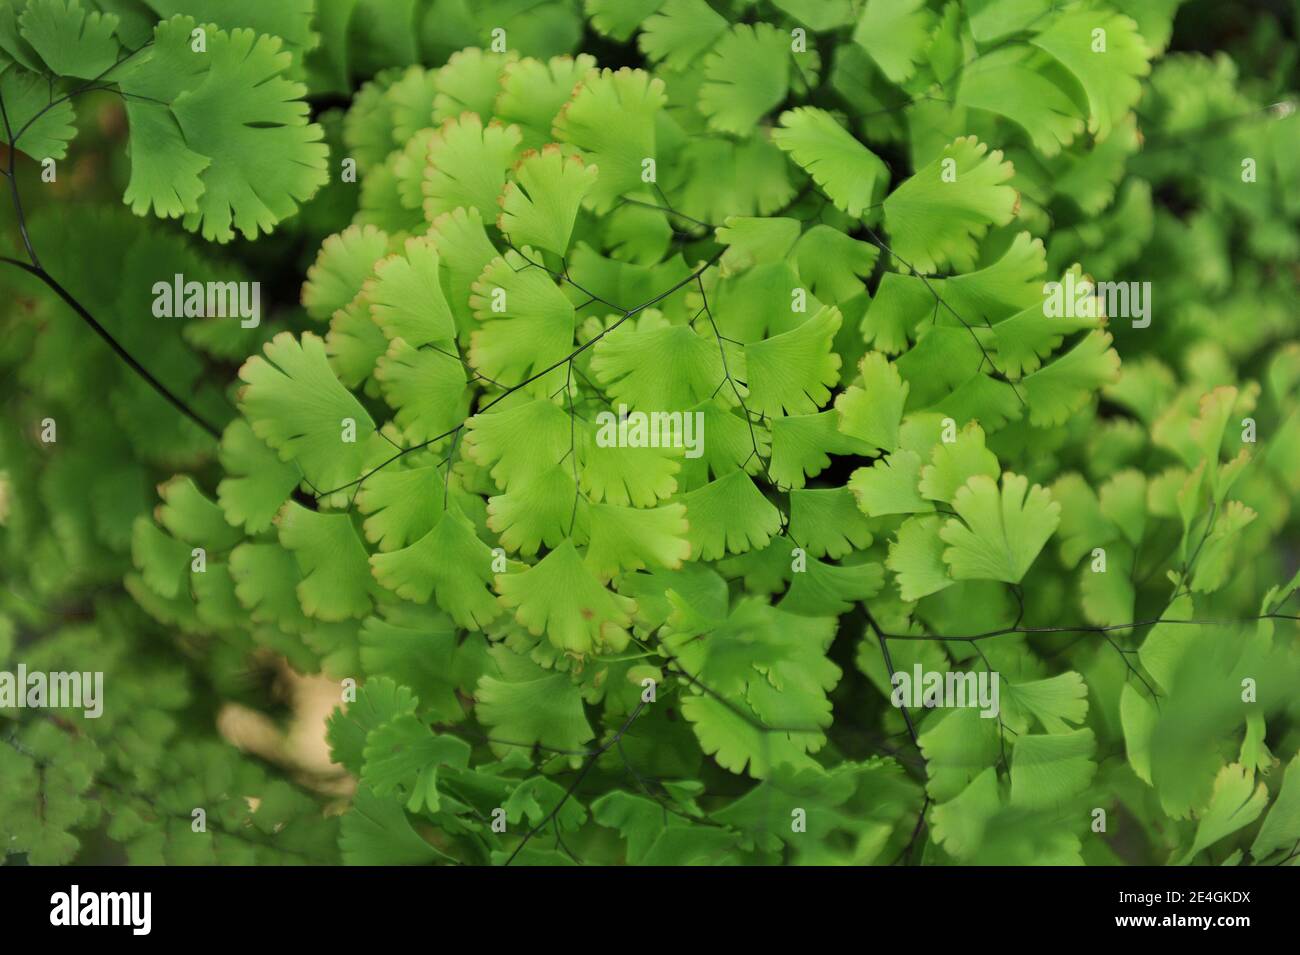 Brittle maidenhair fern (Adiantum tenerum) Farleyense grows in a garden in July Stock Photo